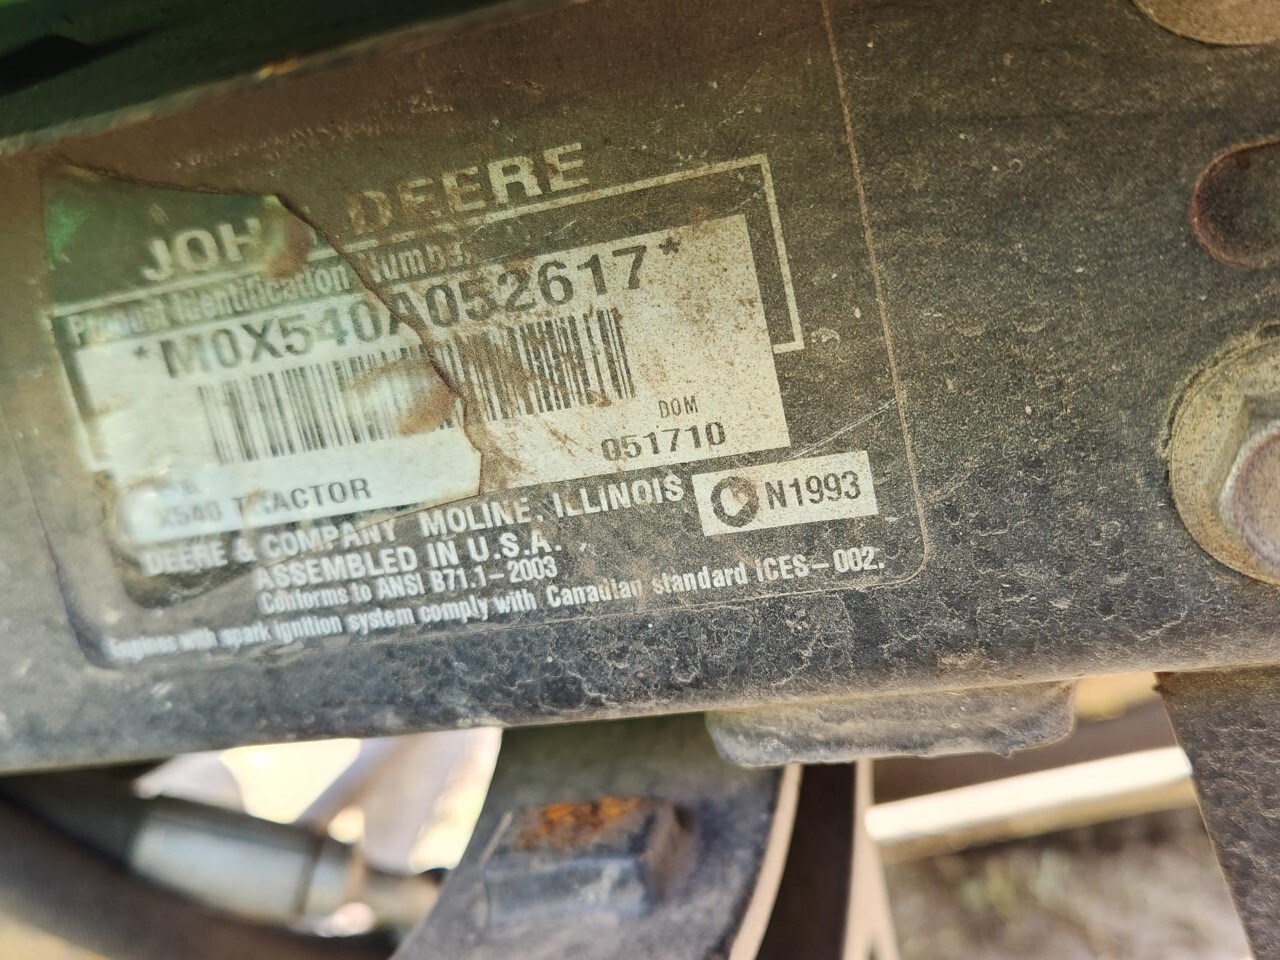 2010 John Deere X540 Lawn Mower For Sale